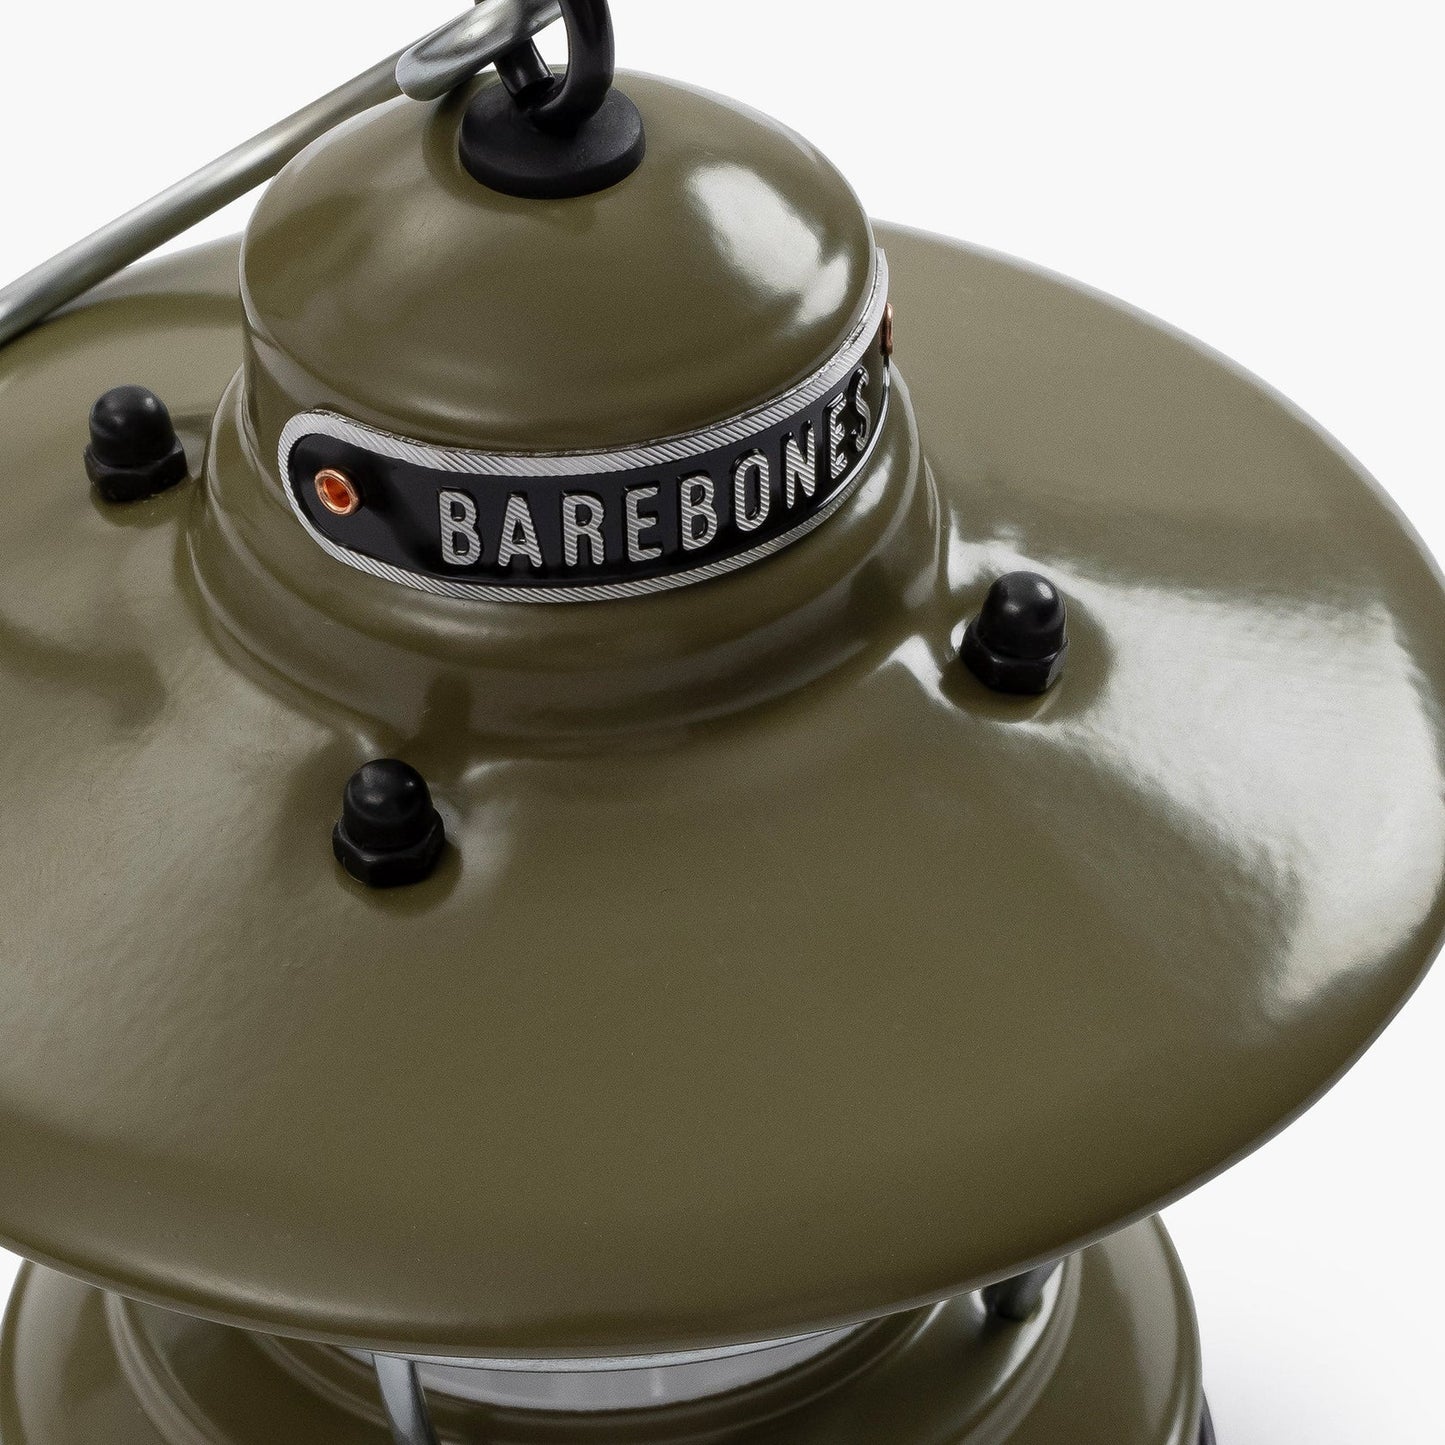 BAREBONES - Edison Mini Lantern